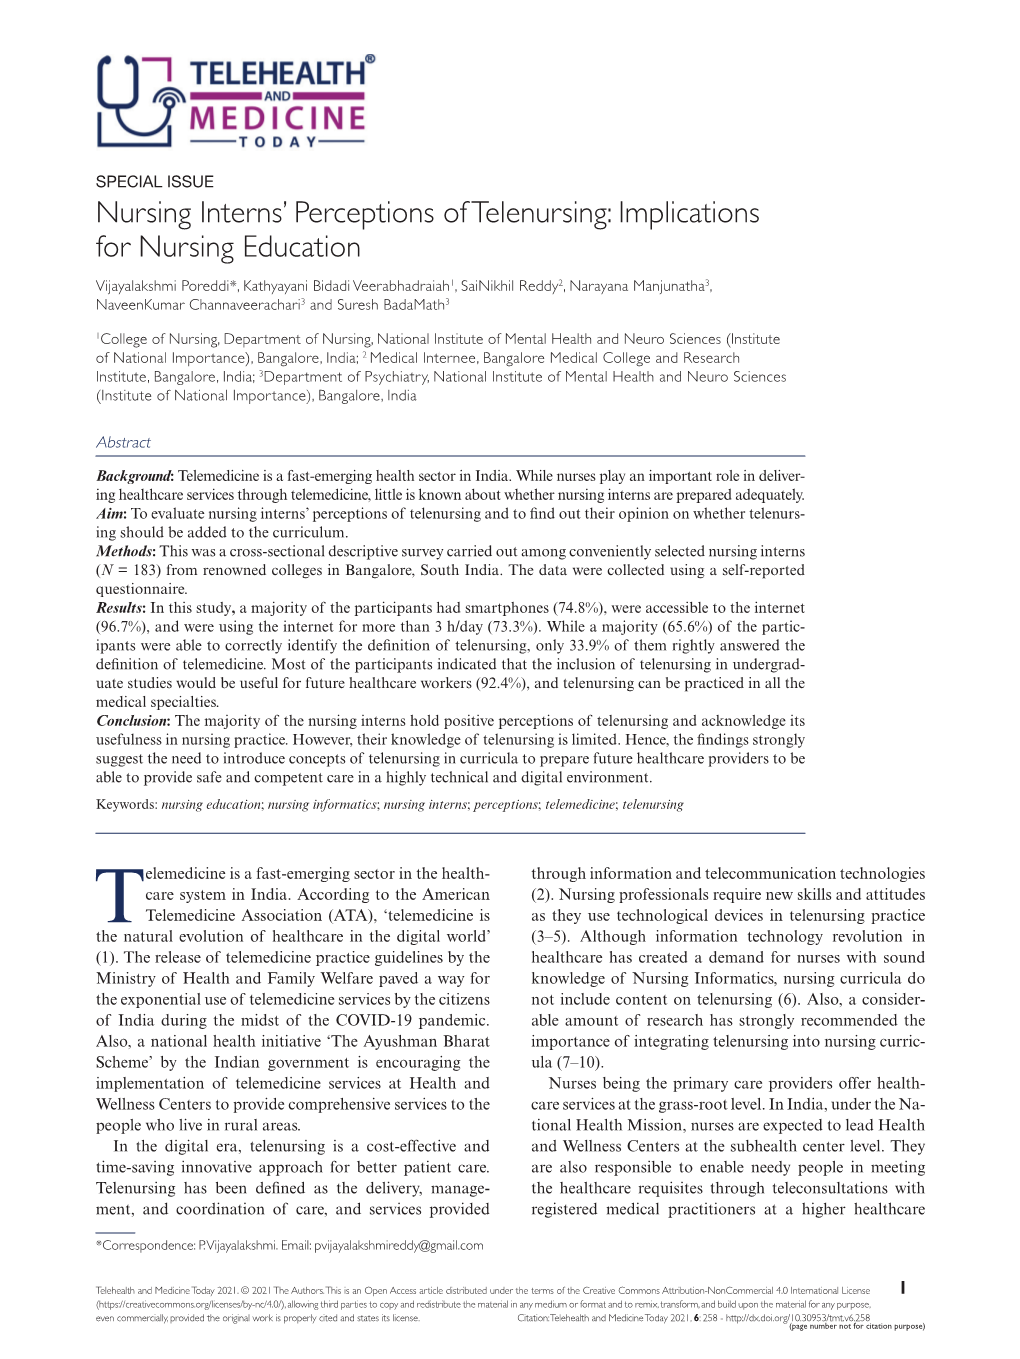 Nursing Interns' Perceptions of Telenursing